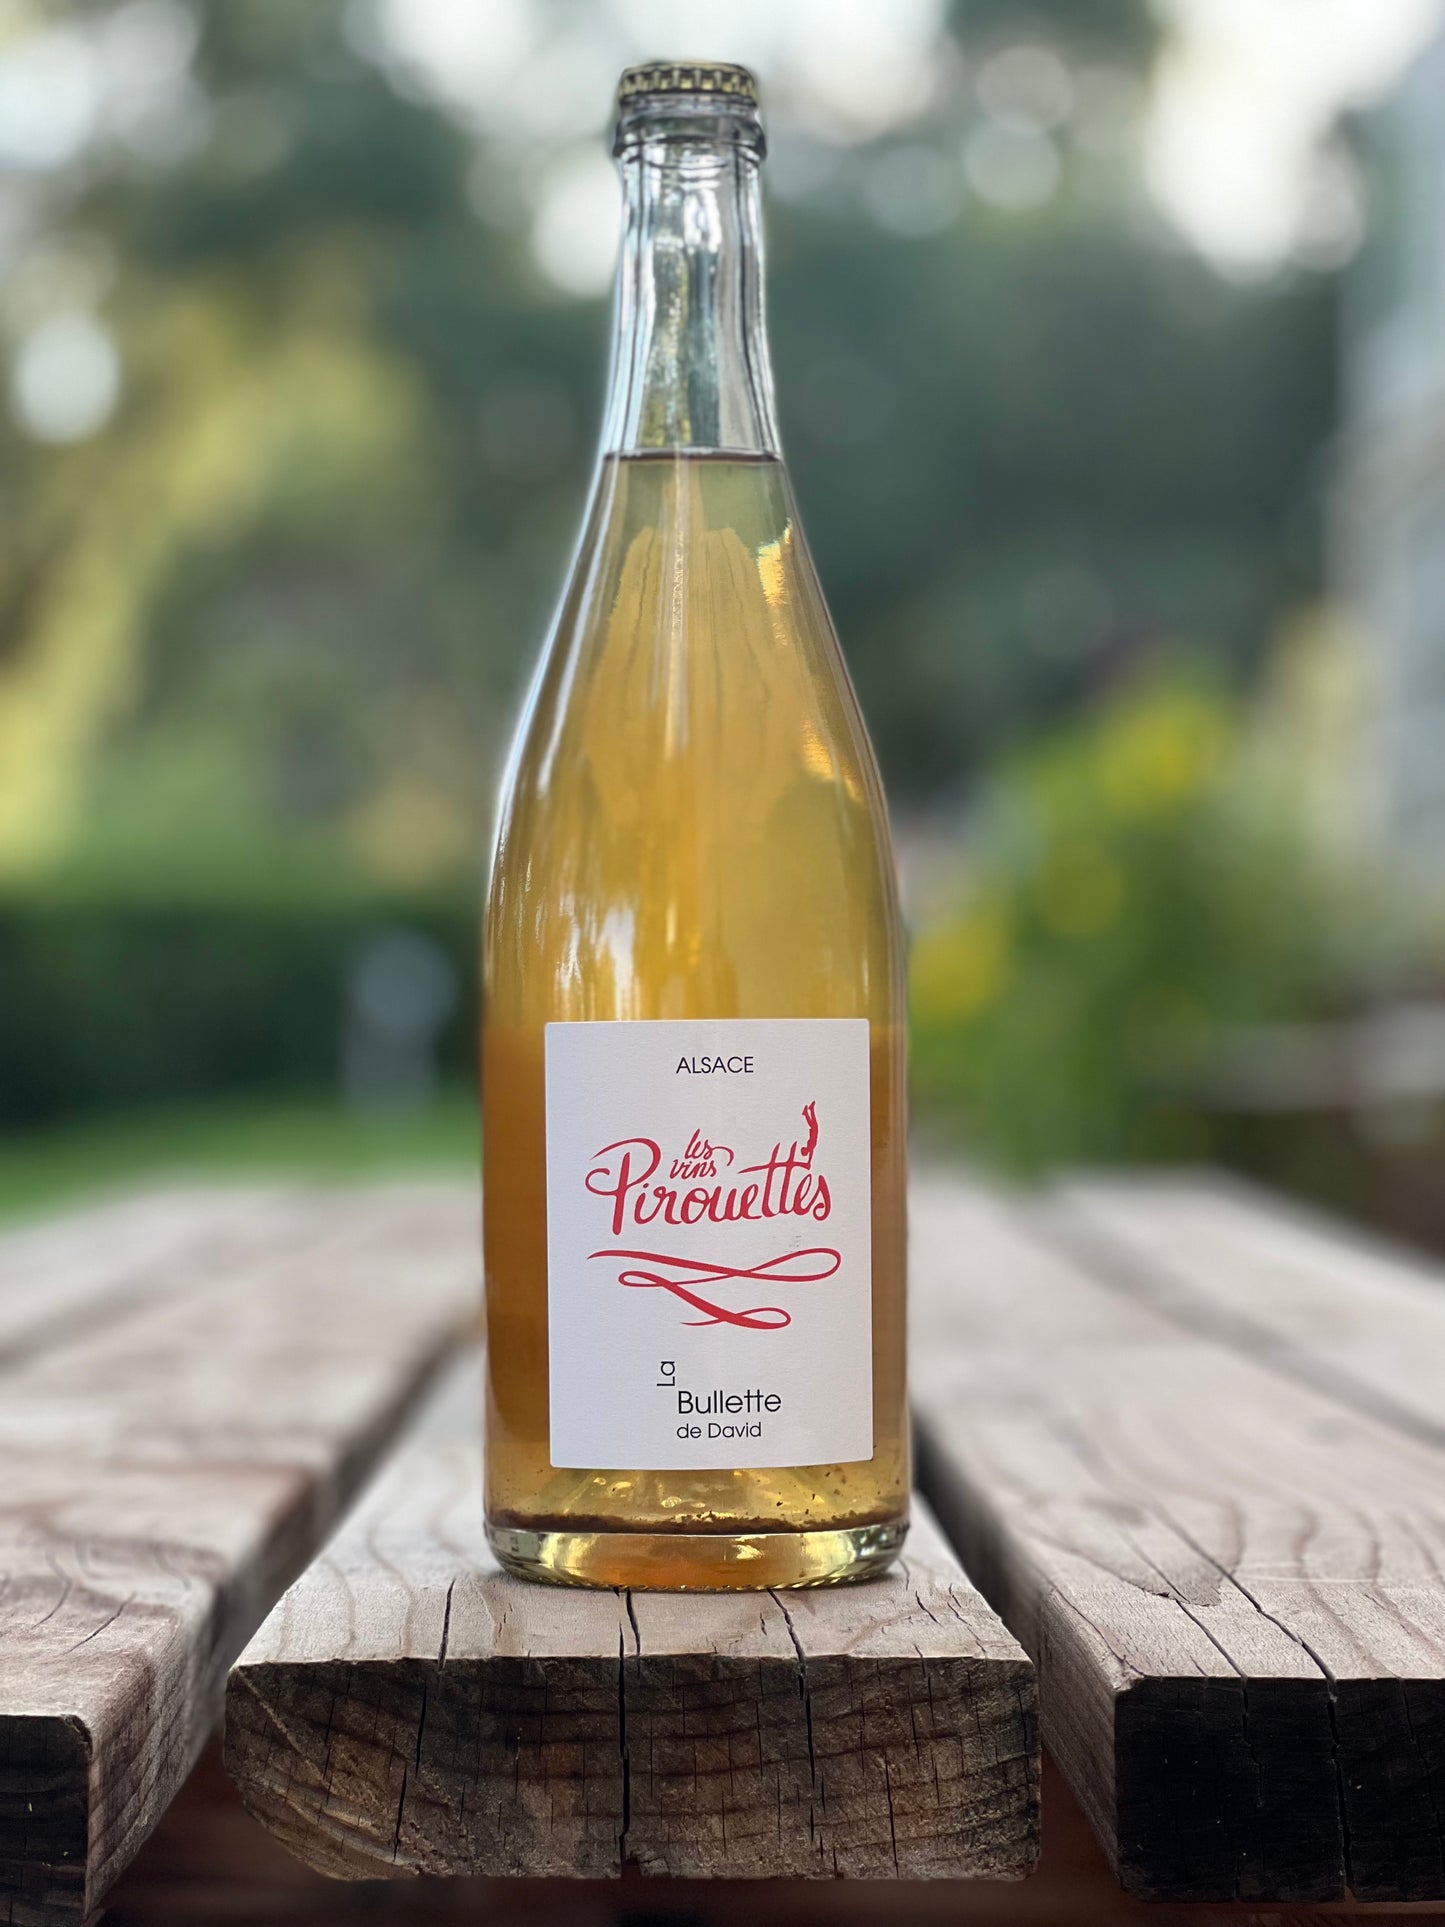 Les Vins Pirouette's La Bullette de David "Orange" Riesling Alsace, France 2018